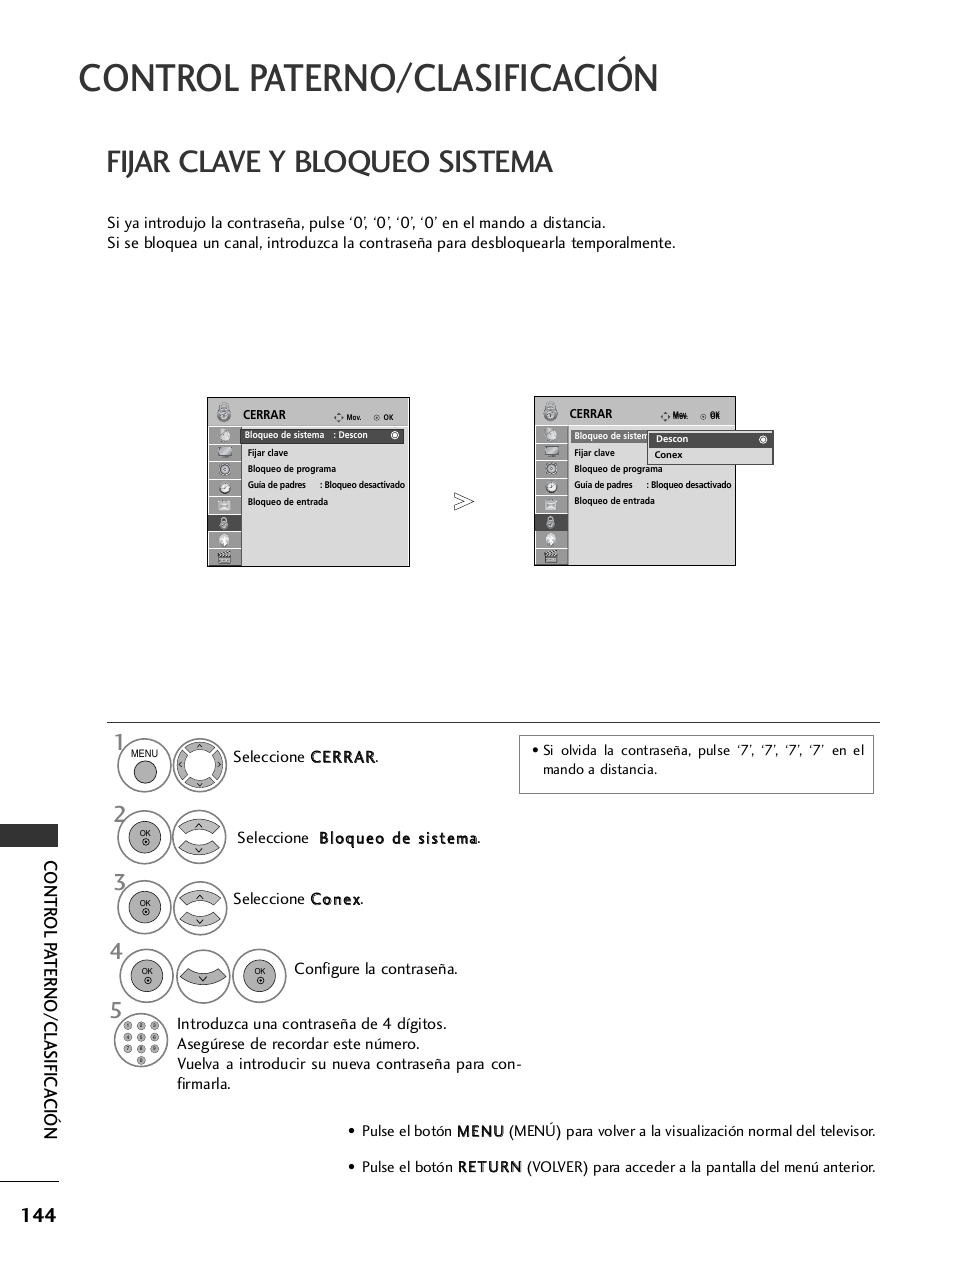 Control paterno/clasificación, Fijar clave y bloqueo sistema, Contr ol p aterno/clasifica ción | LG 32LH40 Manual del usuario | Página 146 / 180